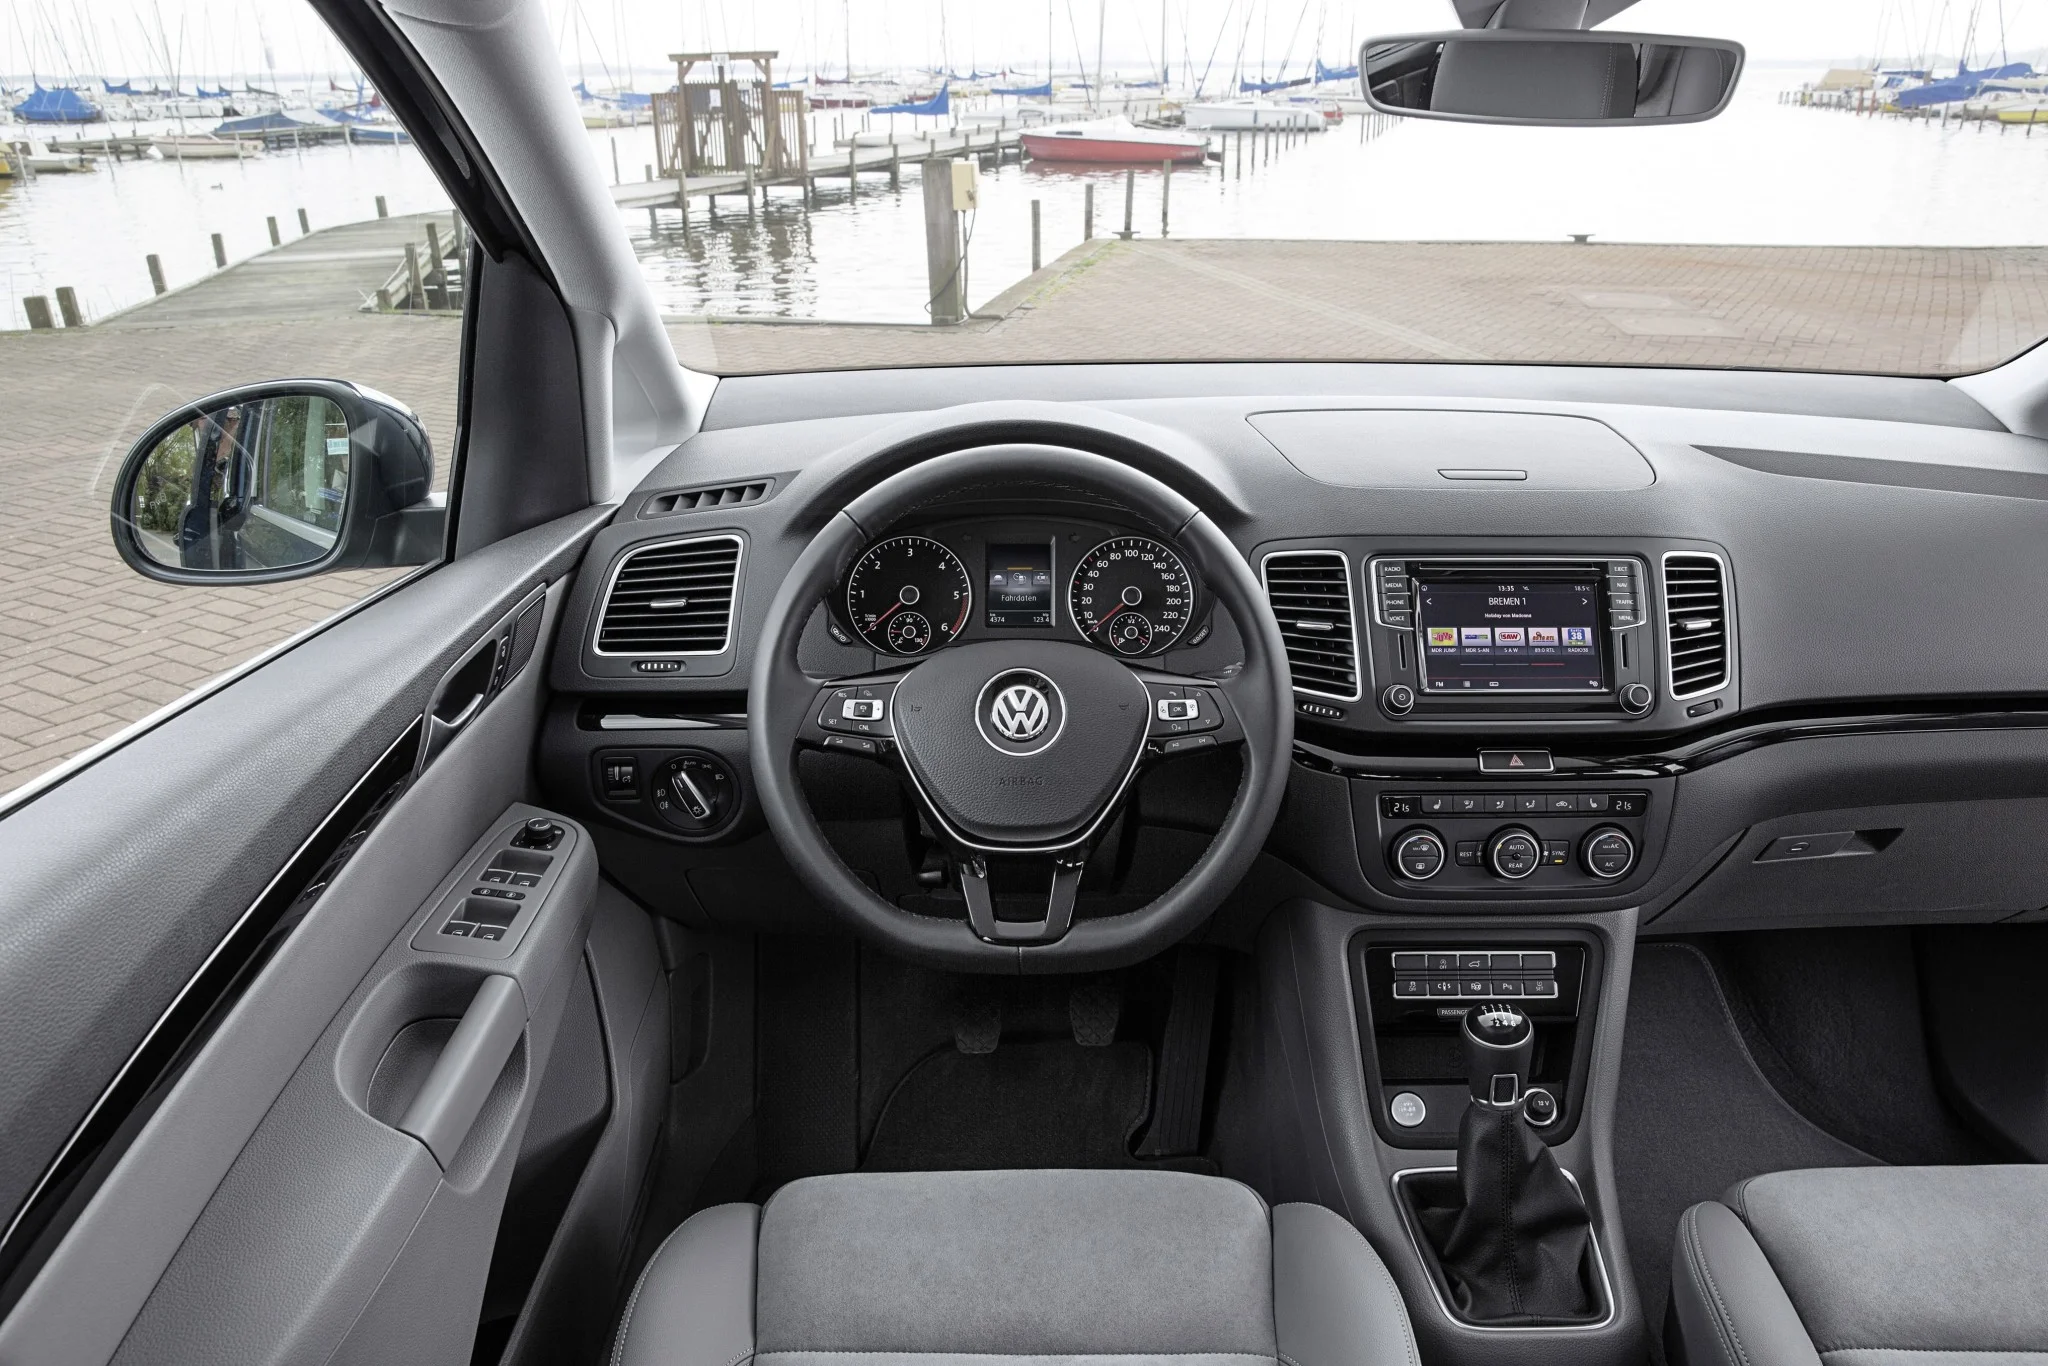 Volkswagen Sharan interior - Cockpit